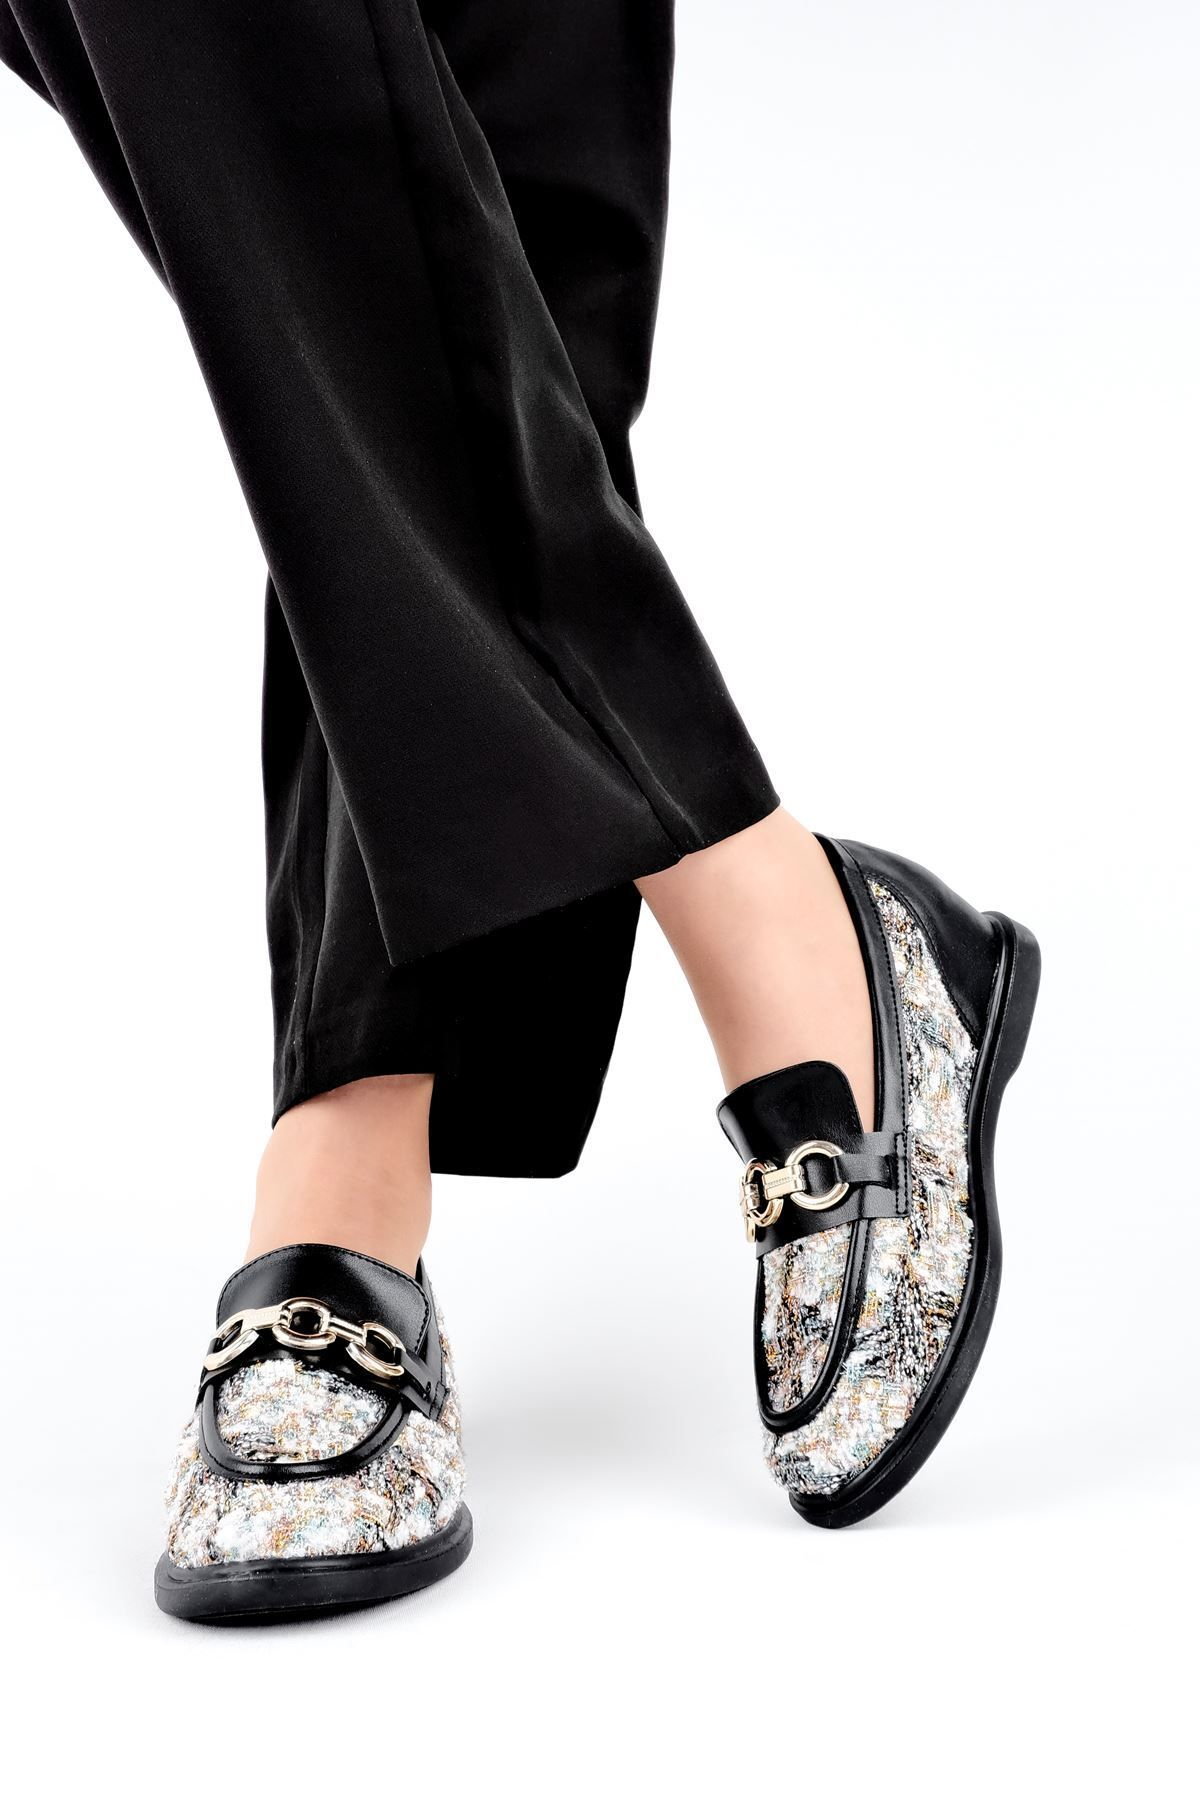 LAL SHOES & BAGS Papatya Gizli Topuk Toka Detay Kadın Günlük Ayakkabı-siyah